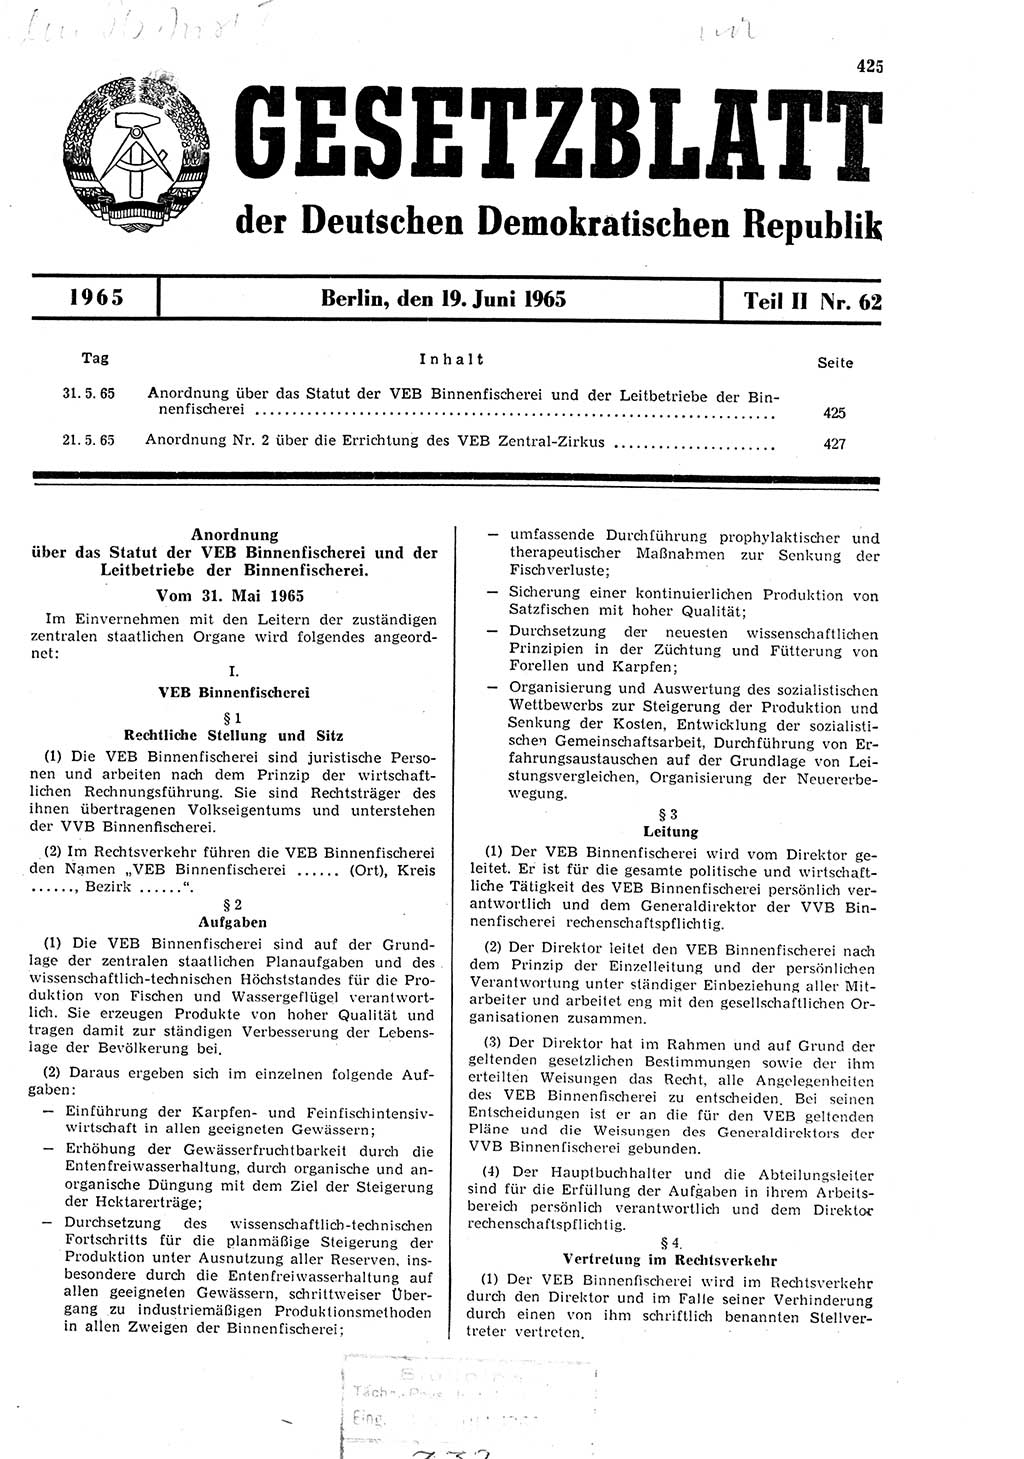 Gesetzblatt (GBl.) der Deutschen Demokratischen Republik (DDR) Teil ⅠⅠ 1965, Seite 425 (GBl. DDR ⅠⅠ 1965, S. 425)